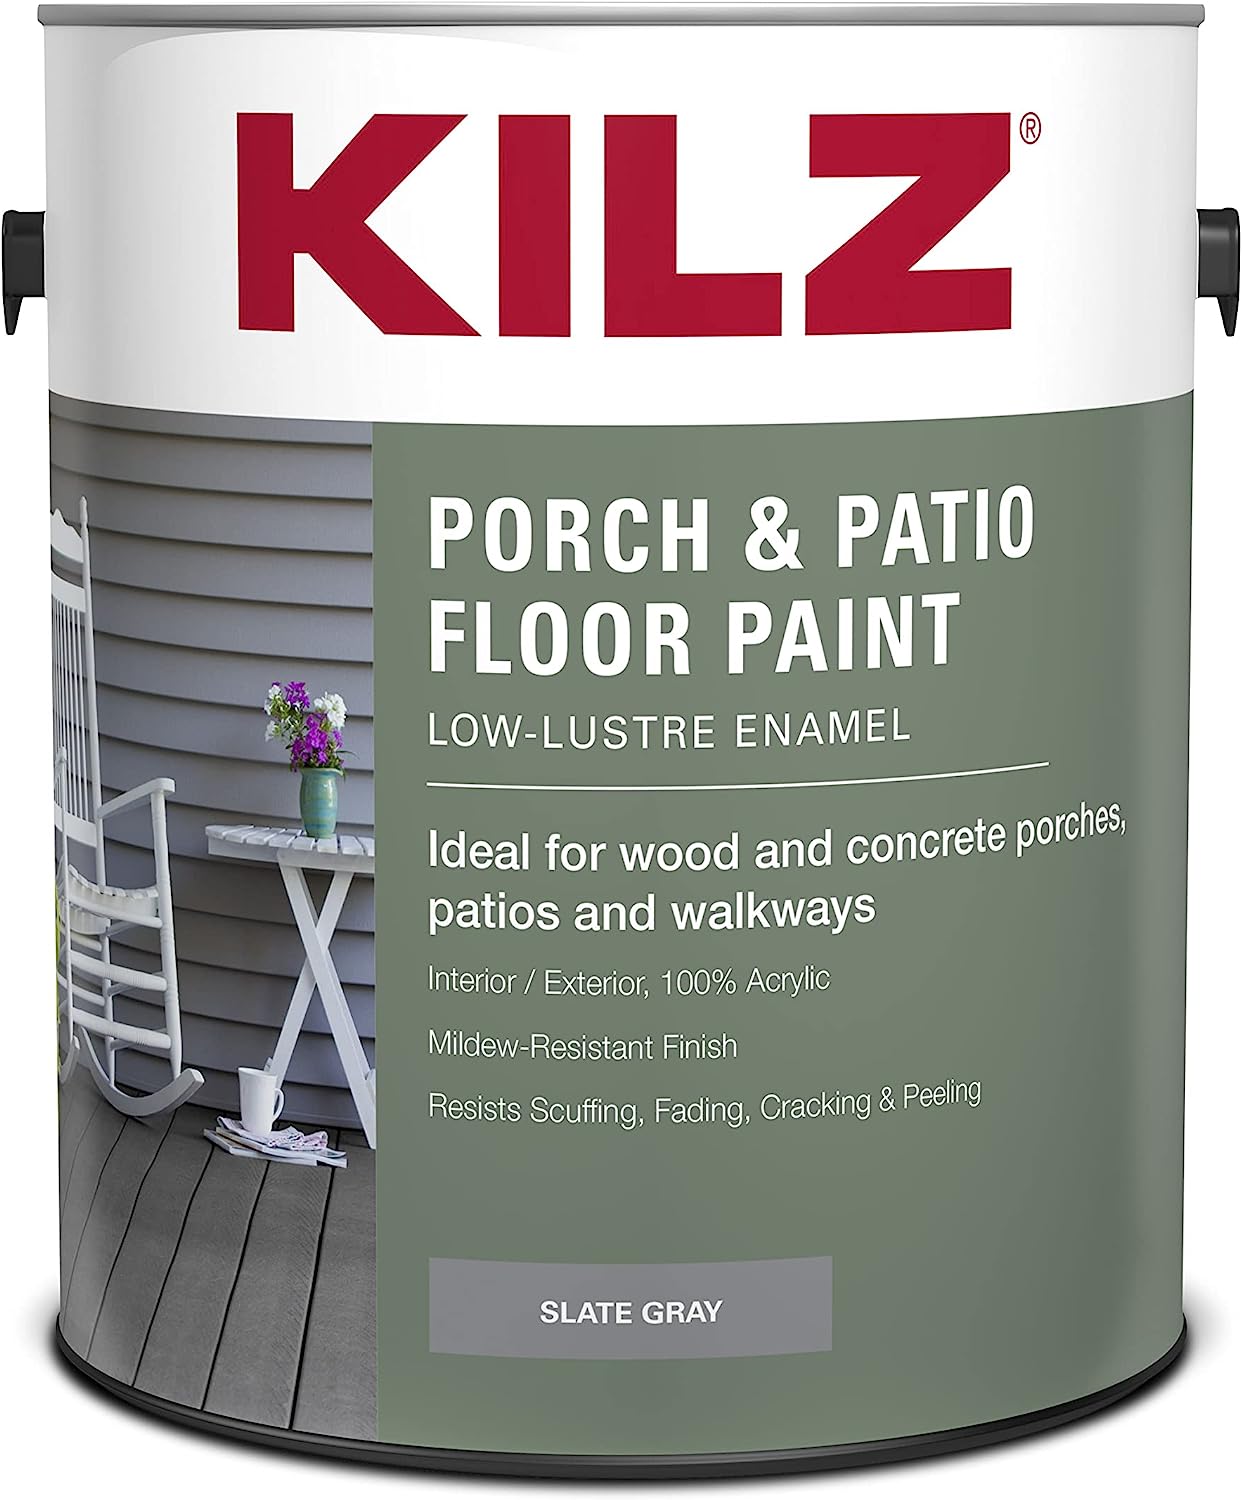 porch paint review